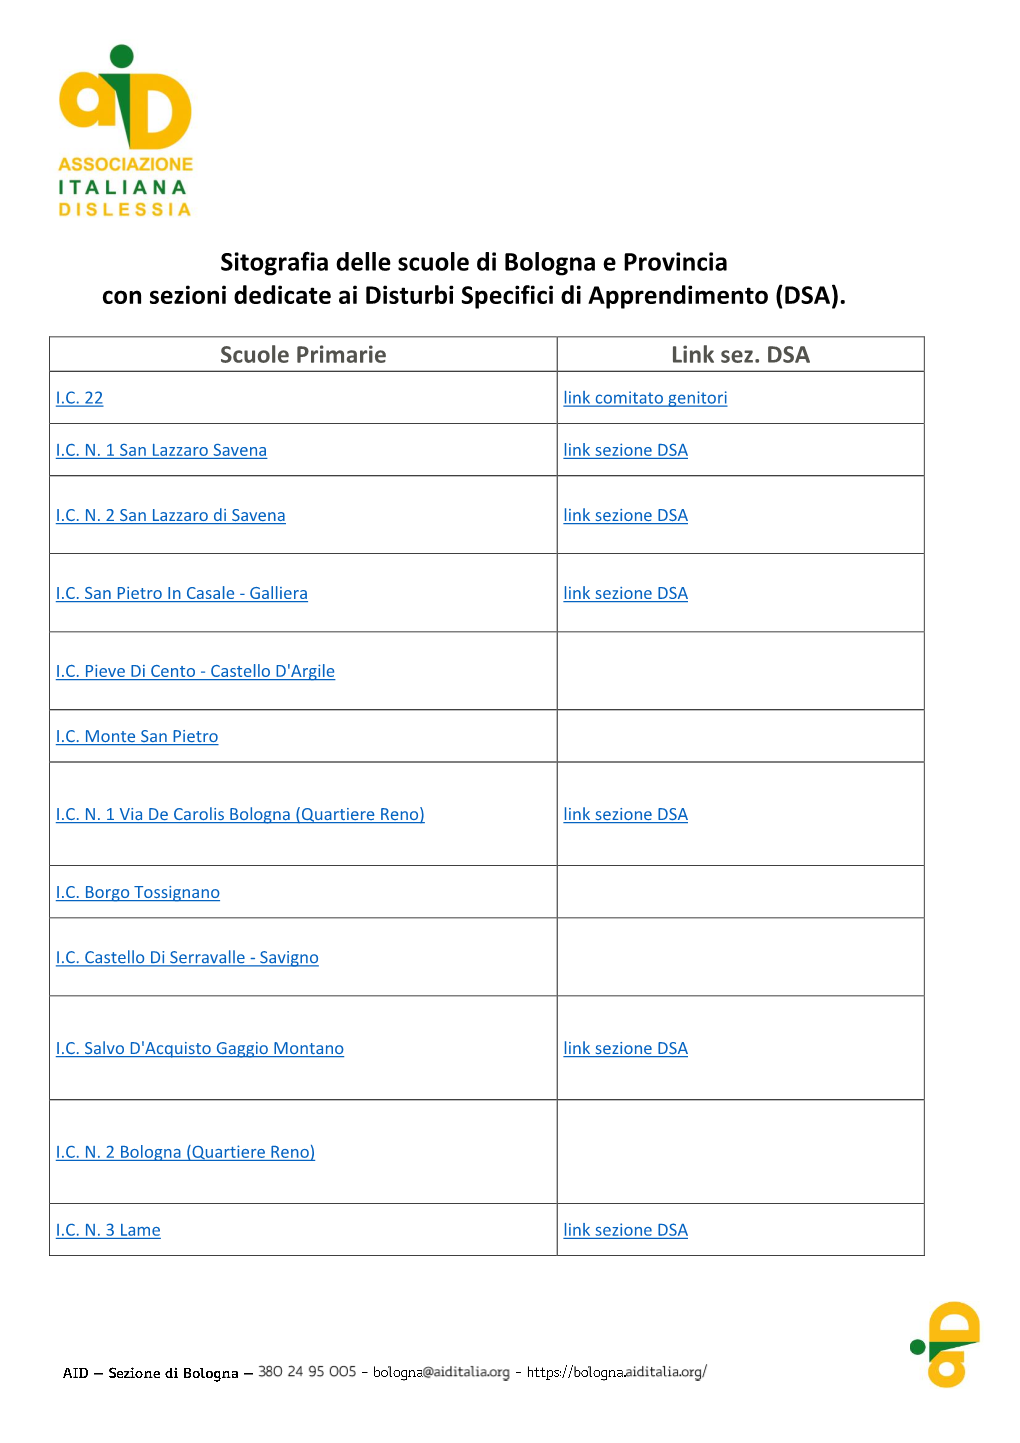 Sitografia Delle Scuole Di Bologna E Provincia Con Sezioni Dedicate Ai Disturbi Specifici Di Apprendimento (DSA)